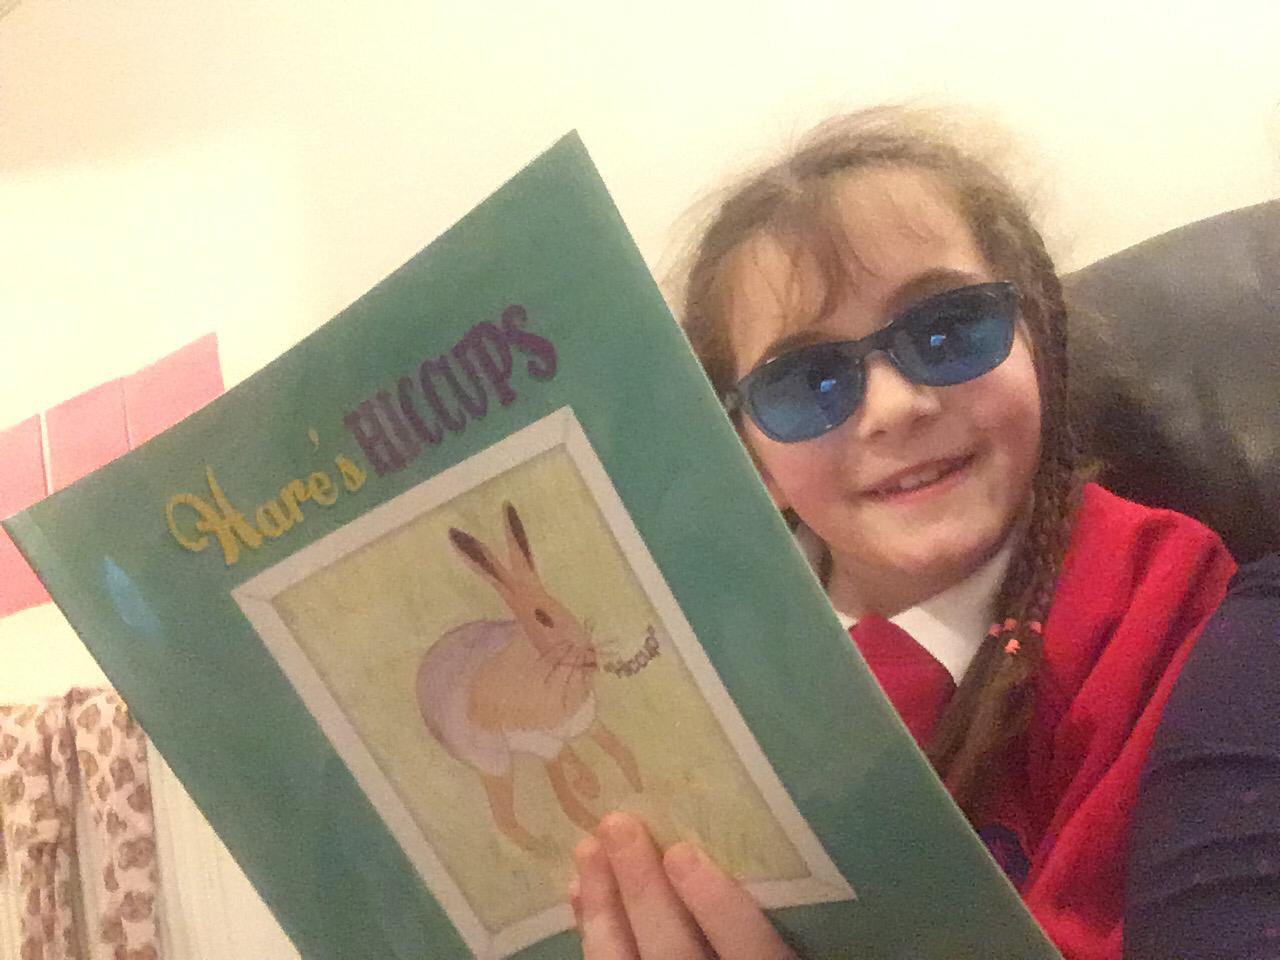 Karen Parker Shared the Images of Children Enjoying her Story Books